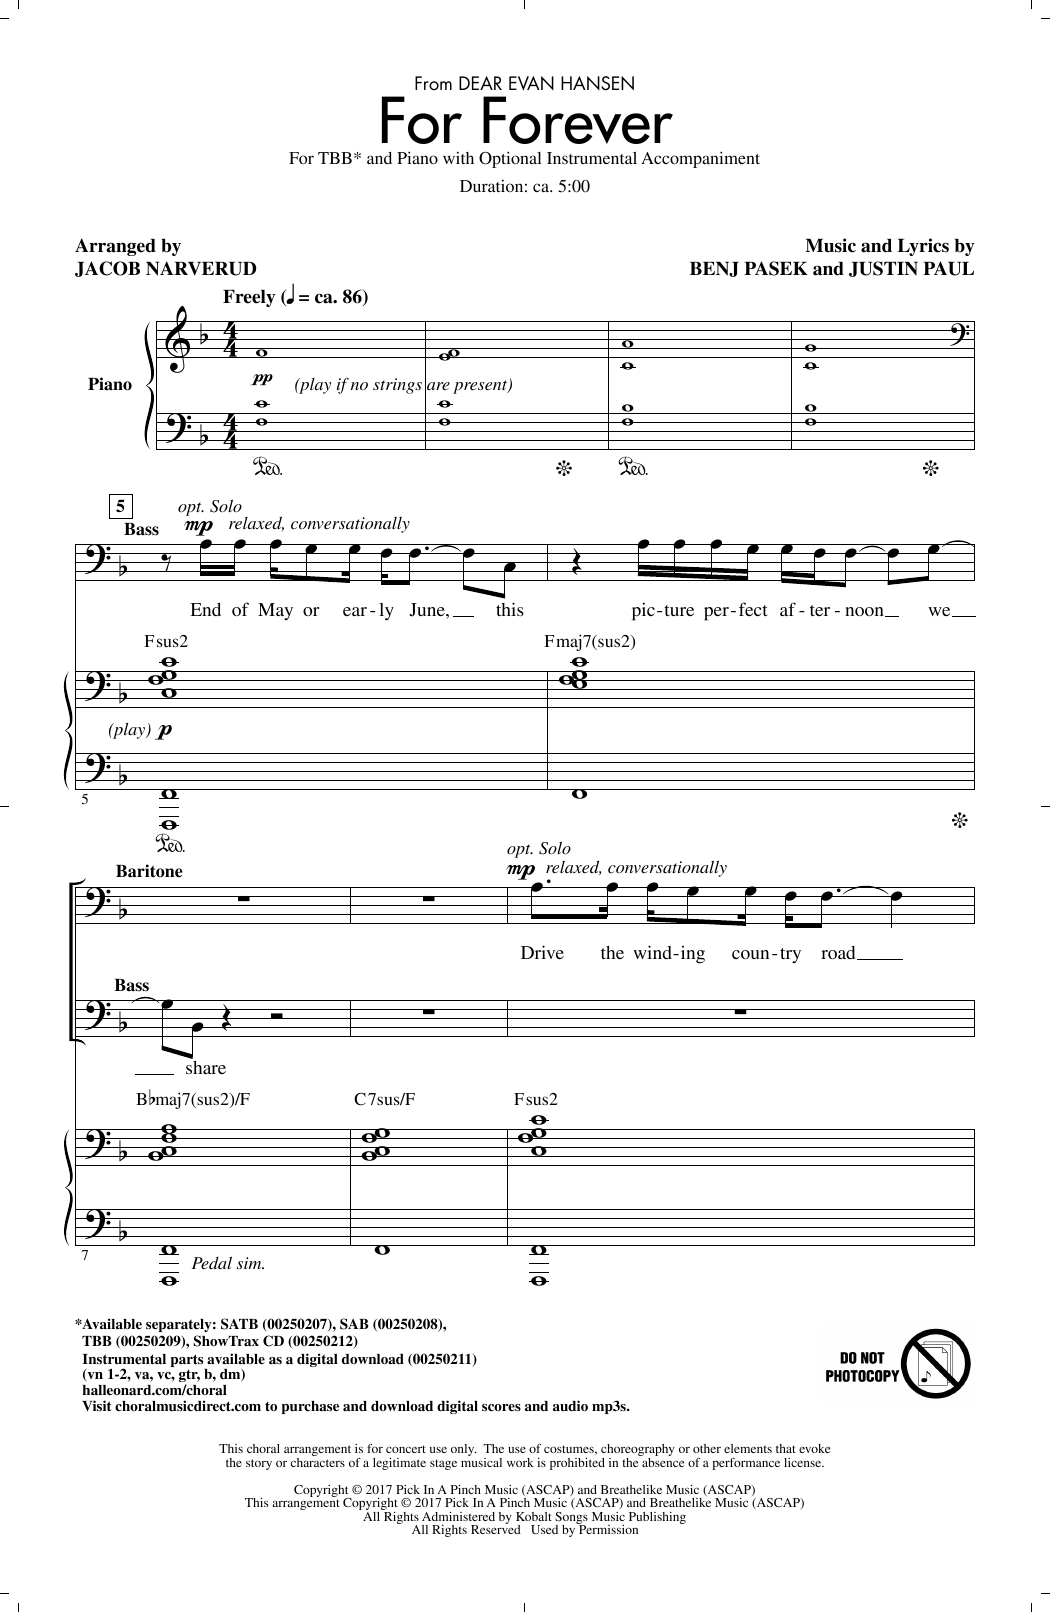 Pasek & Paul For Forever (from Dear Evan Hansen) (arr. Jacob Narverud) sheet music notes and chords arranged for TBB Choir